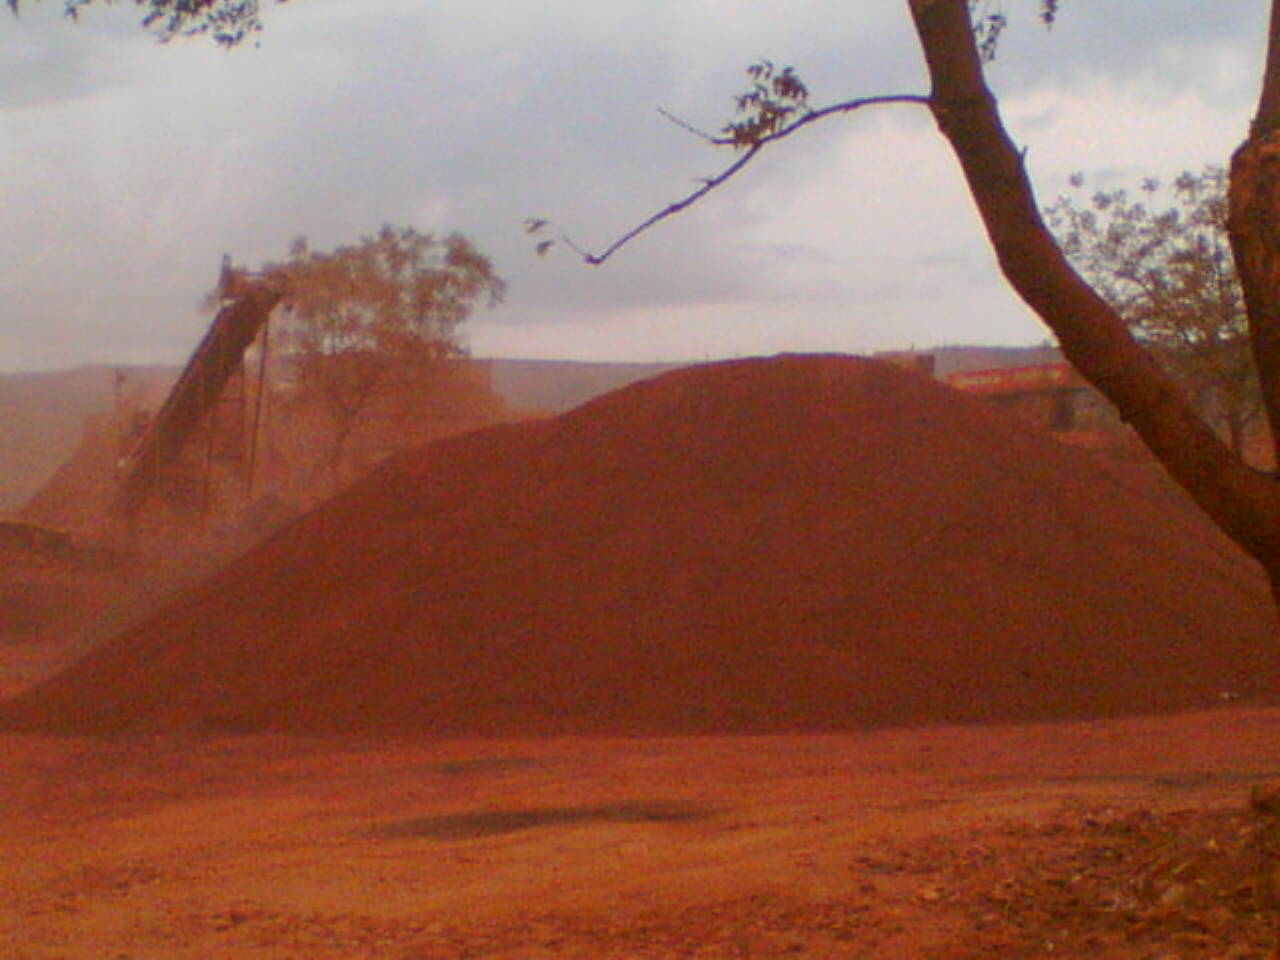 Iron ore